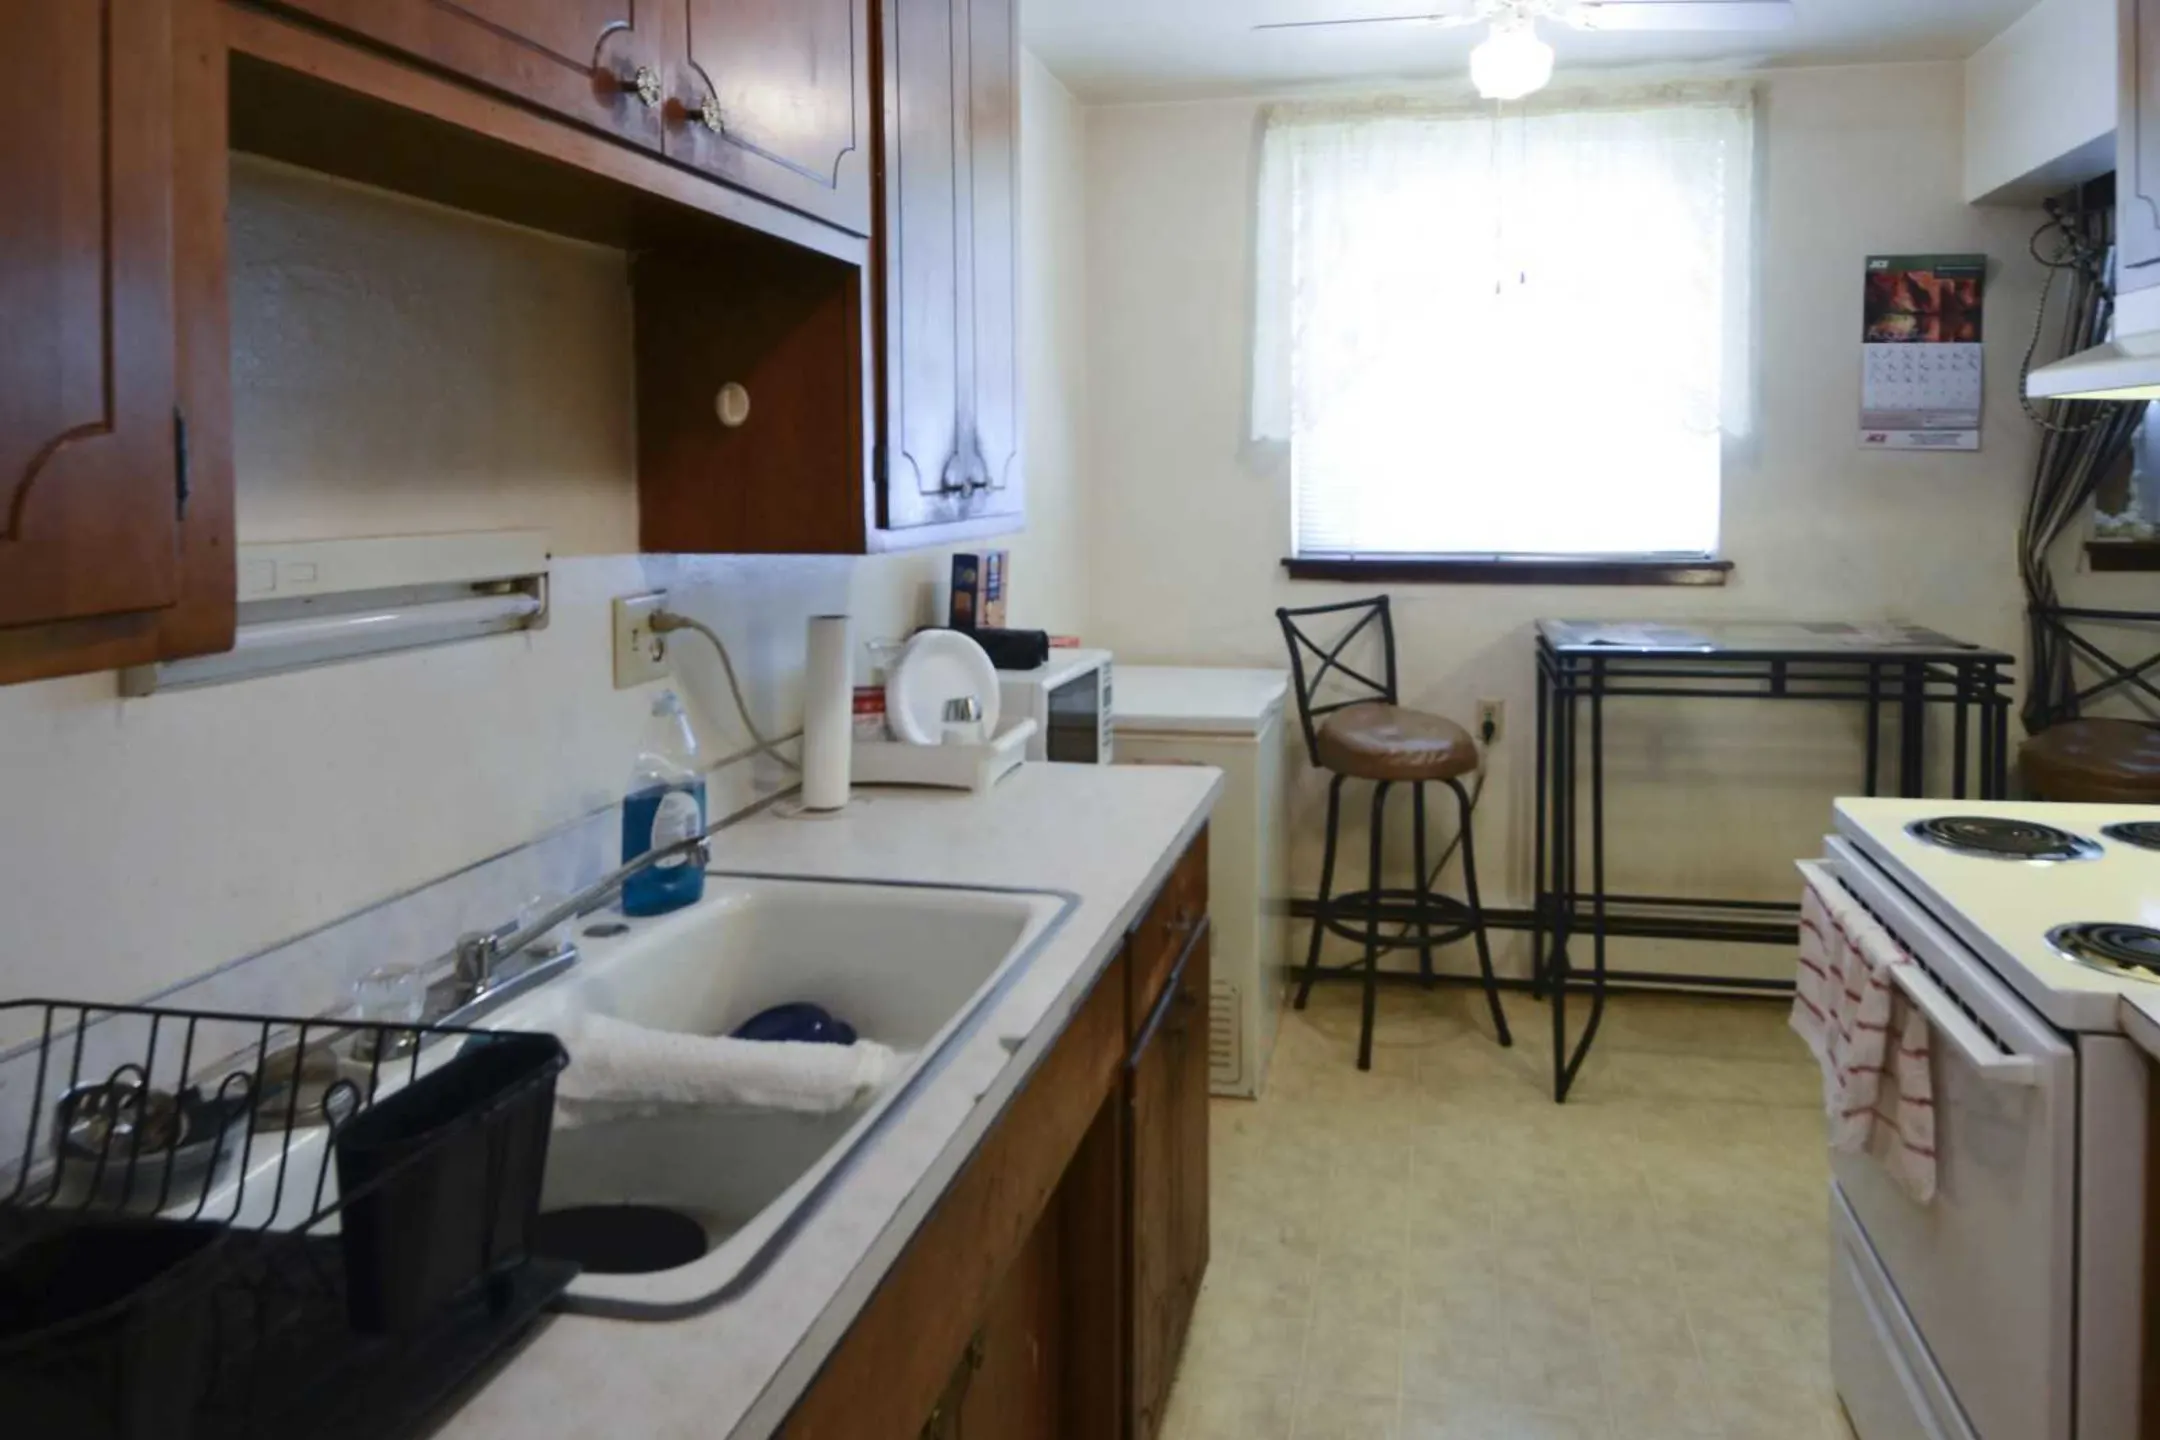 Kitchen - Minnehaha Apartments - Saint Paul, MN